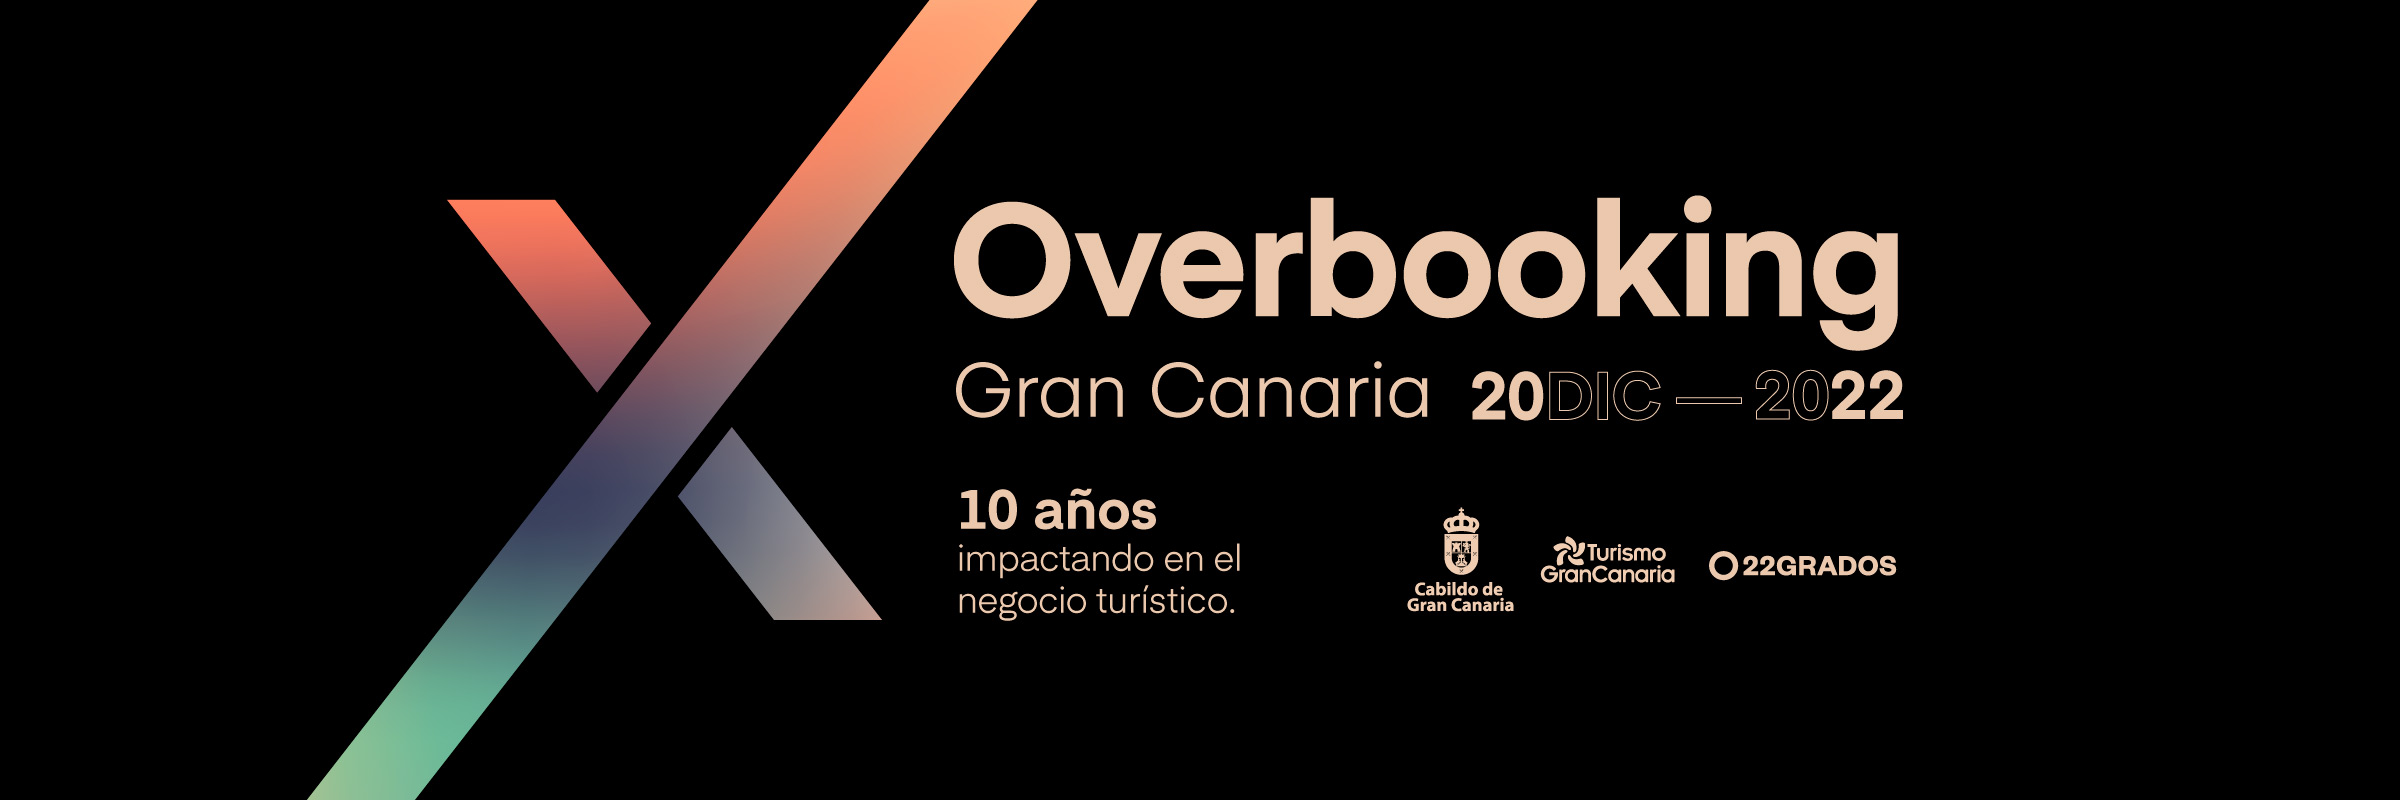 Overbooking Gran Canaria Summit 2022: Conoce todo sobre el evento